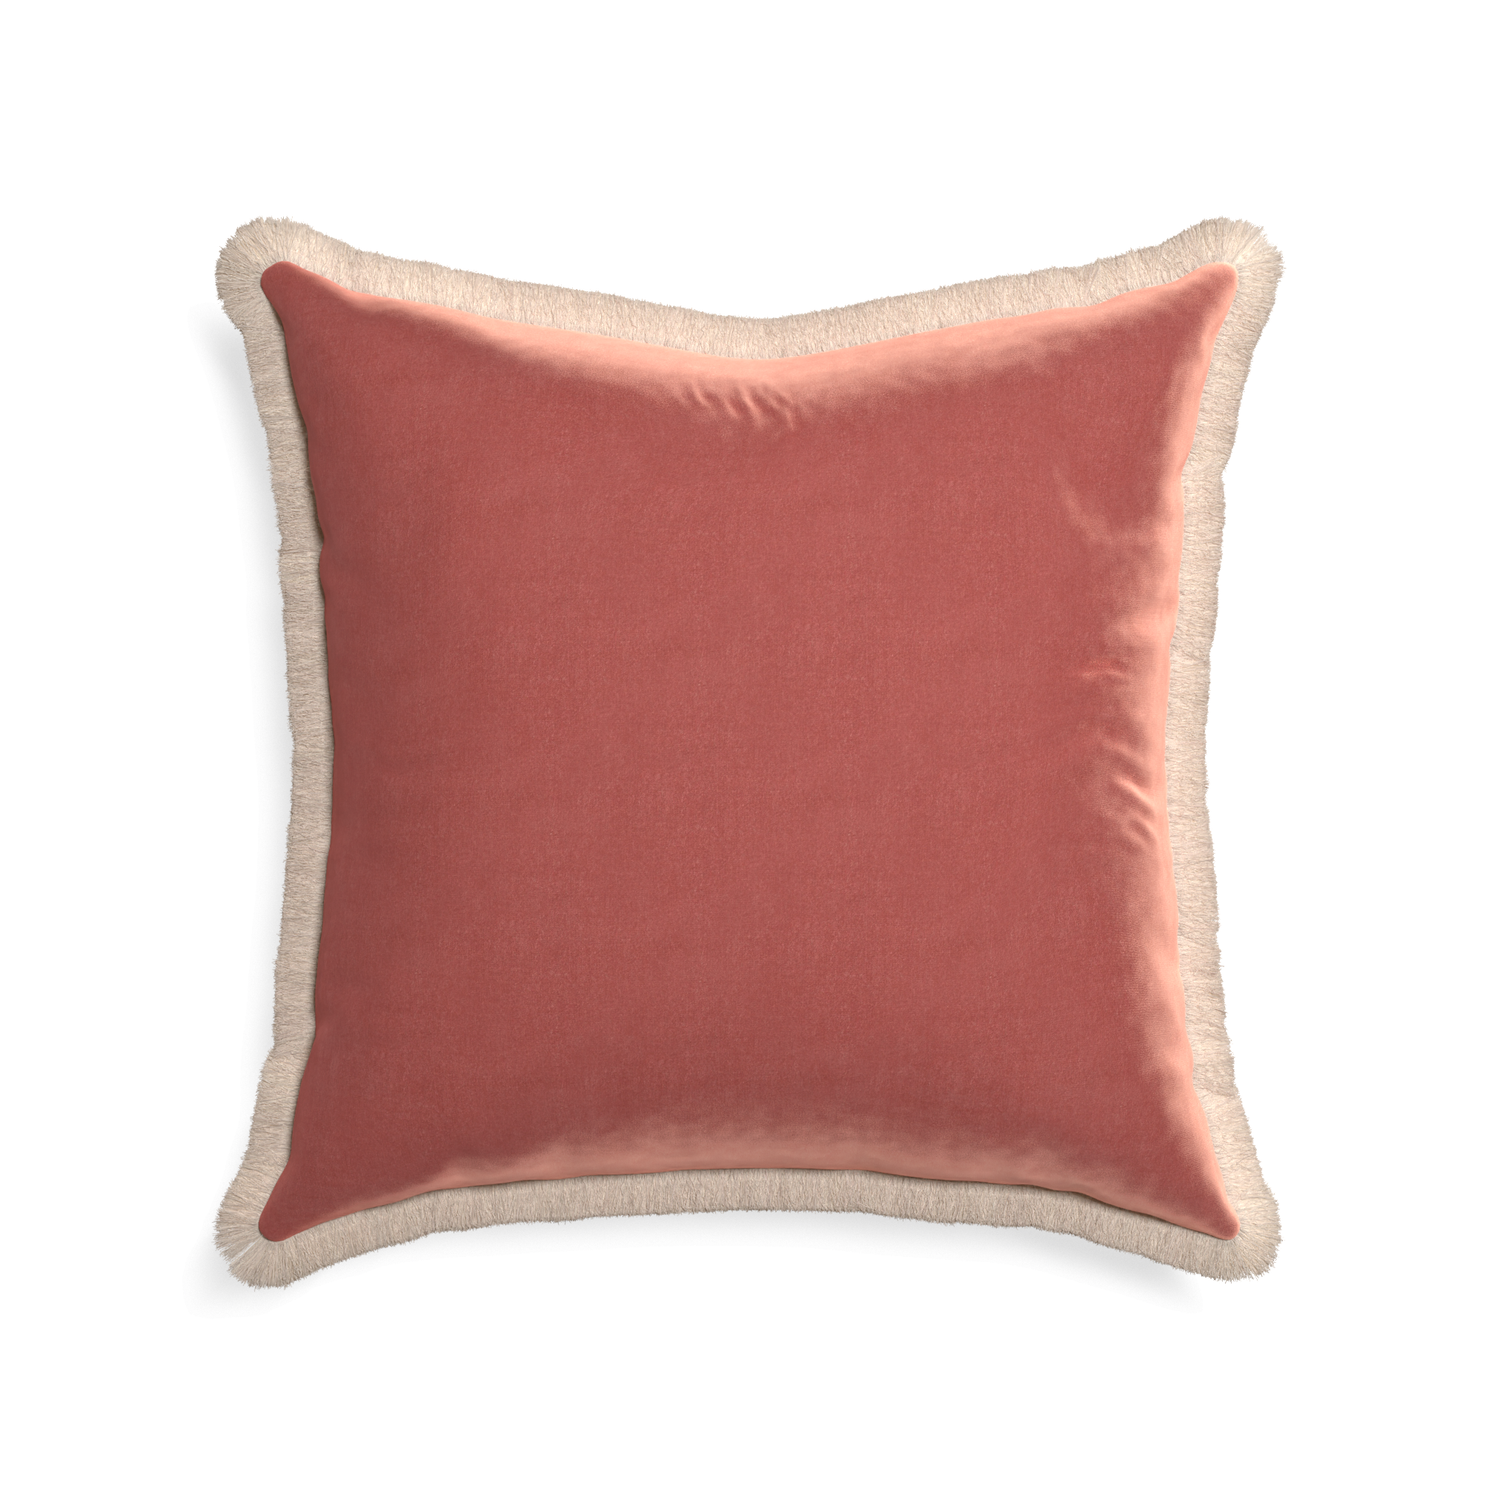 22-square cosmo velvet custom pillow with cream fringe on white background